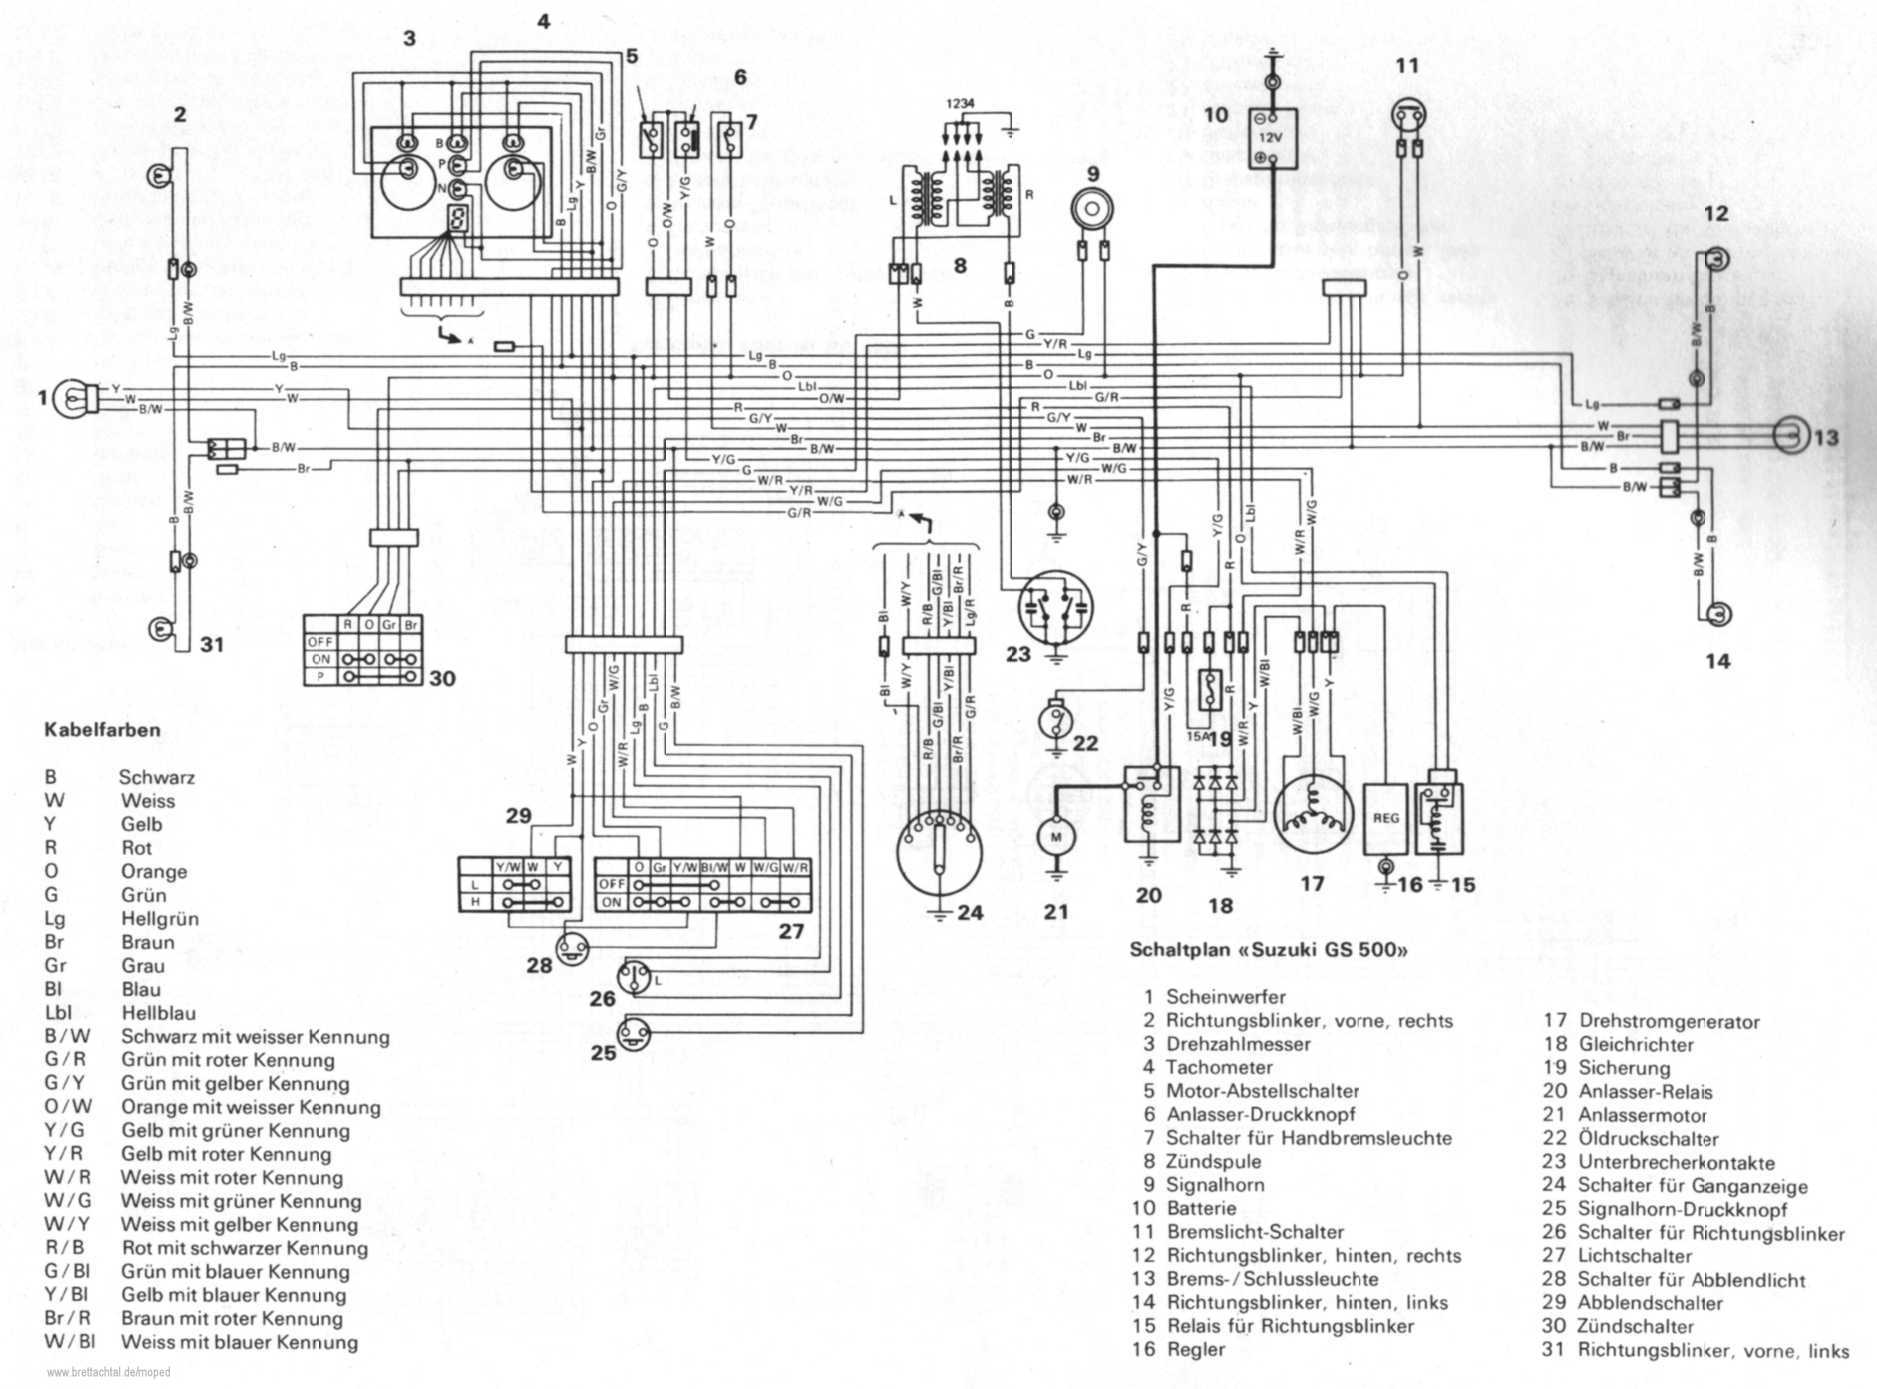 rfx 150 schematic